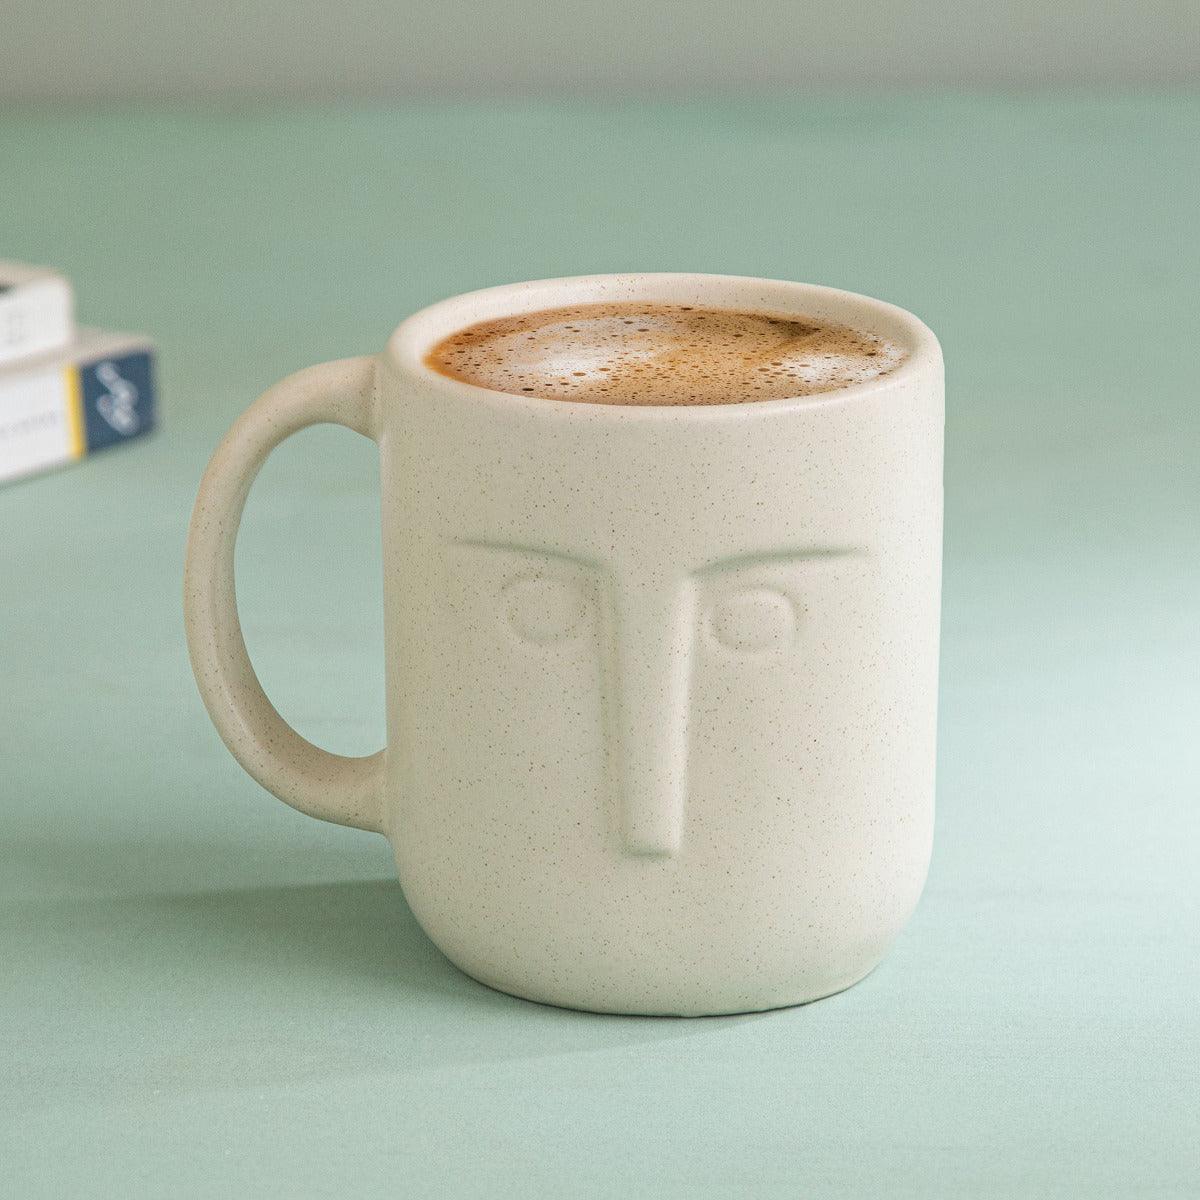 Moai ceramic coffee mug set of 2